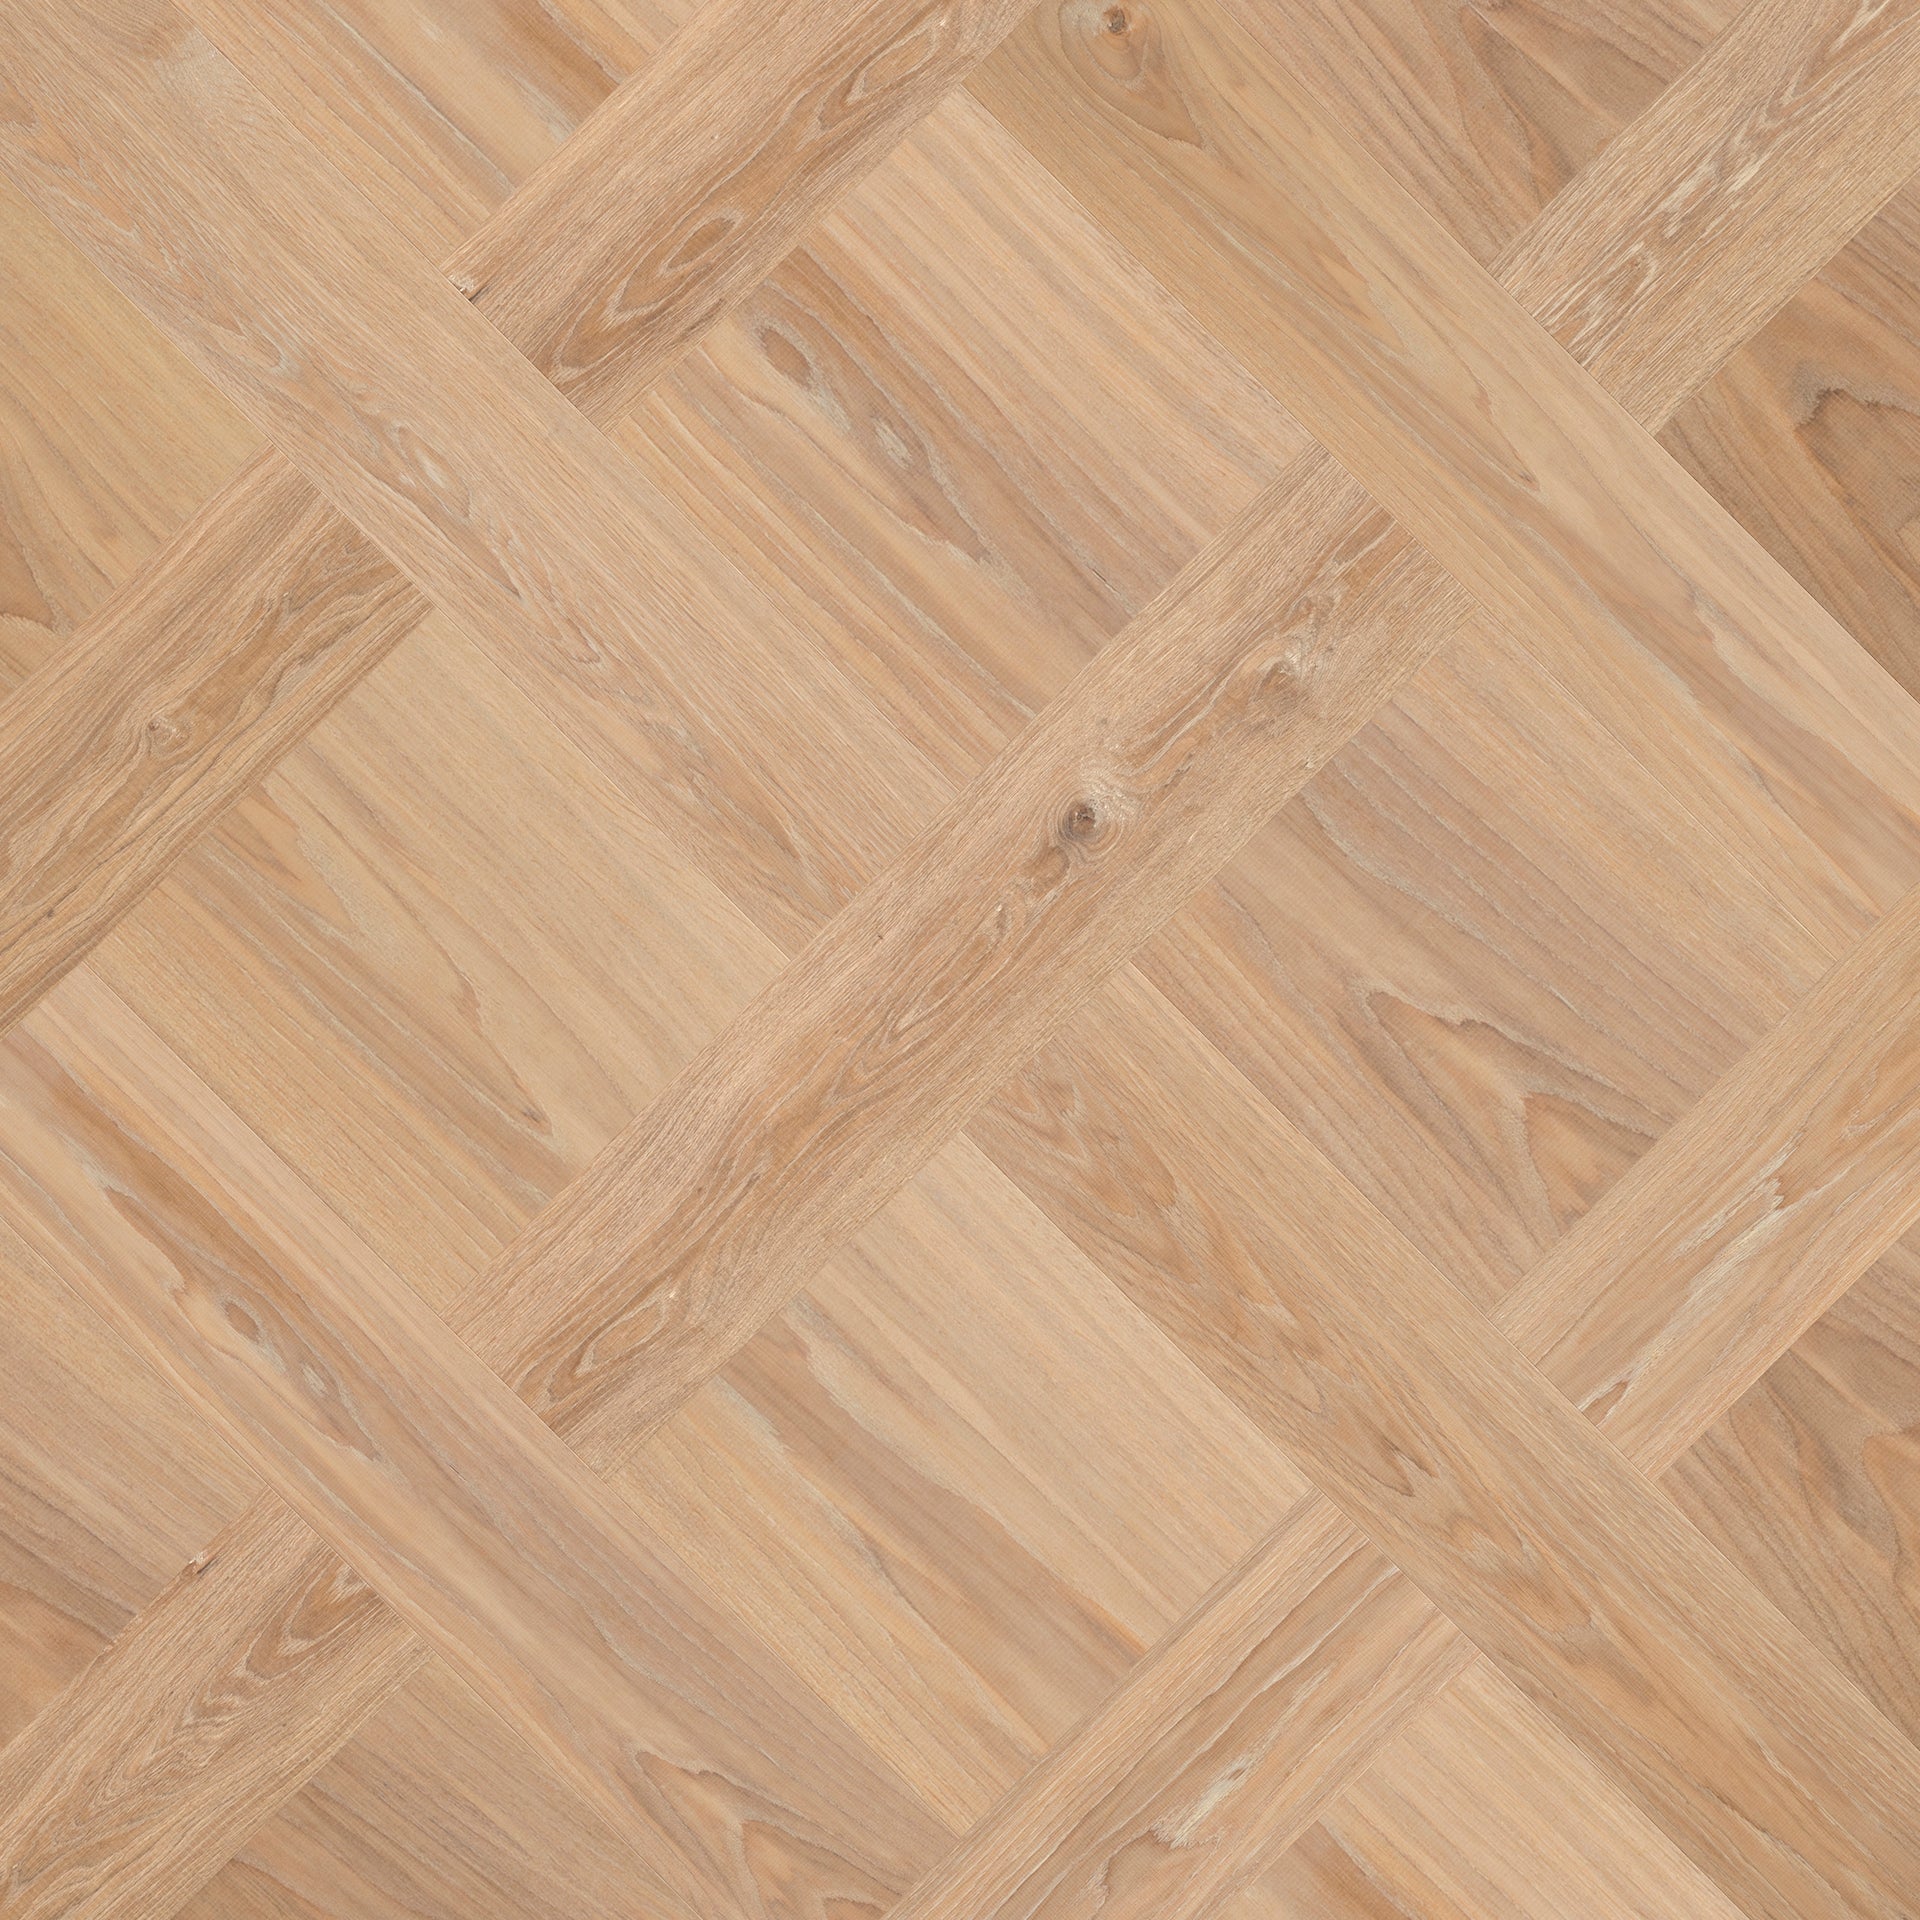 Het Vlecht patroon is een exclusief houten vloer patroon bij Uipkes